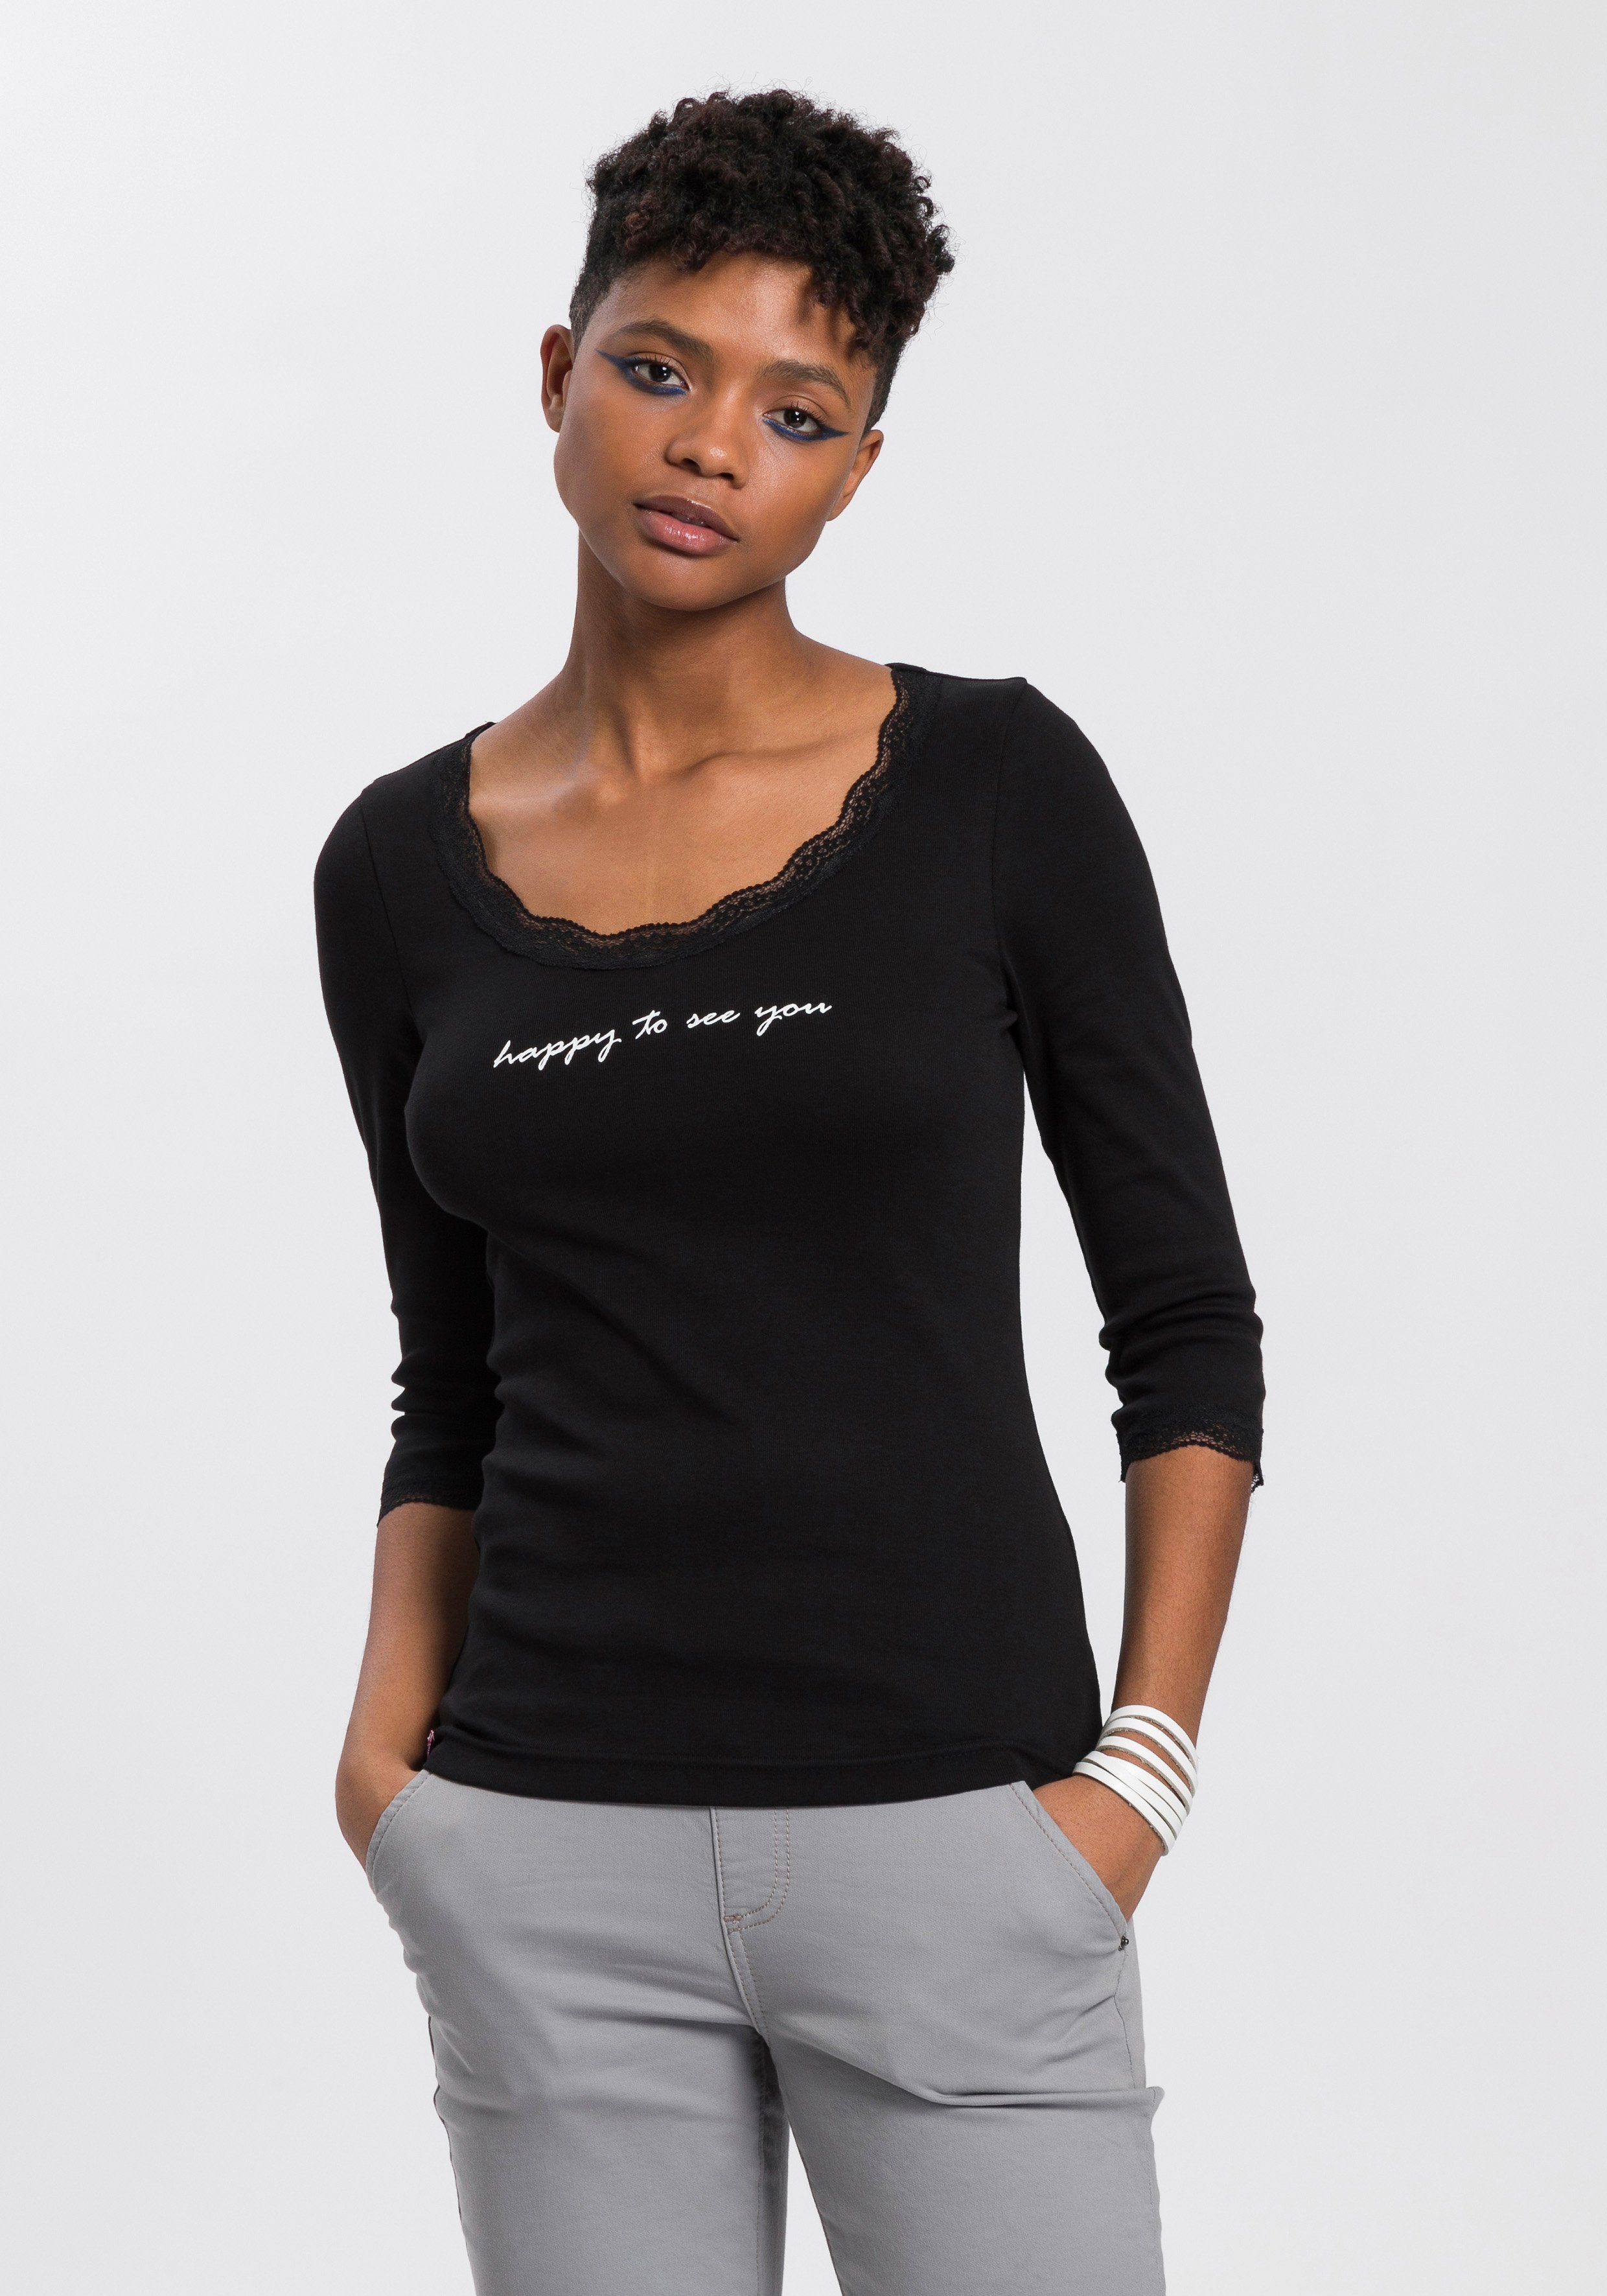 KangaROOS T-Shirt mit Spitzenband am V-Ausschnitt & 3/4-Arm schwarz